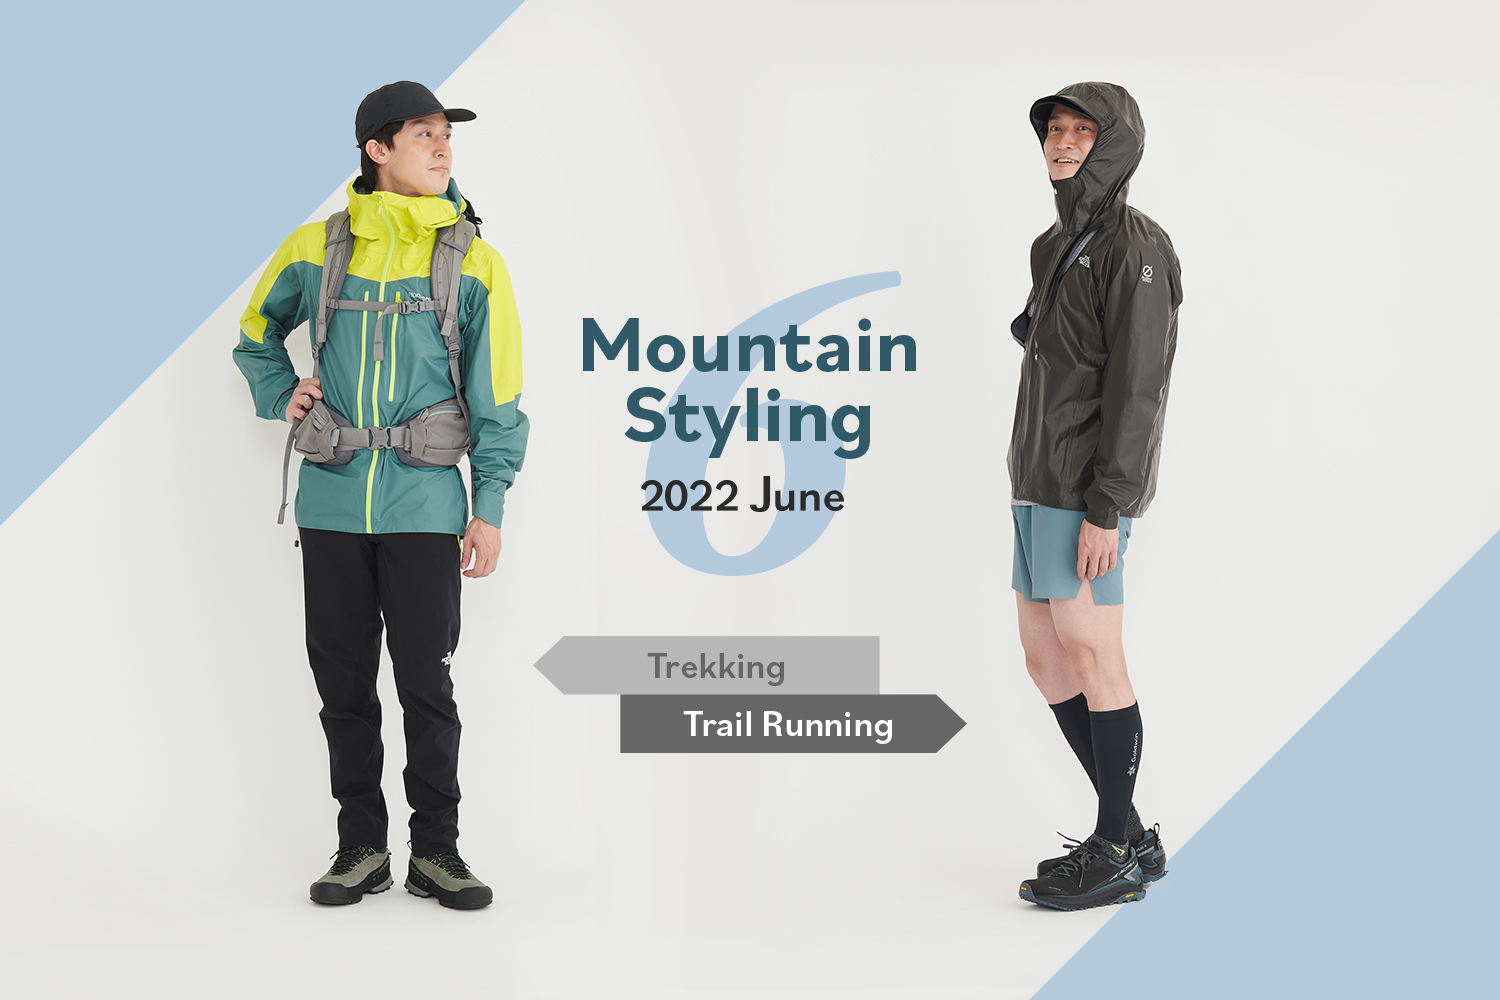 雨の山を積極的に楽しむためのウェア選び | 登山&トレランのおすすめ